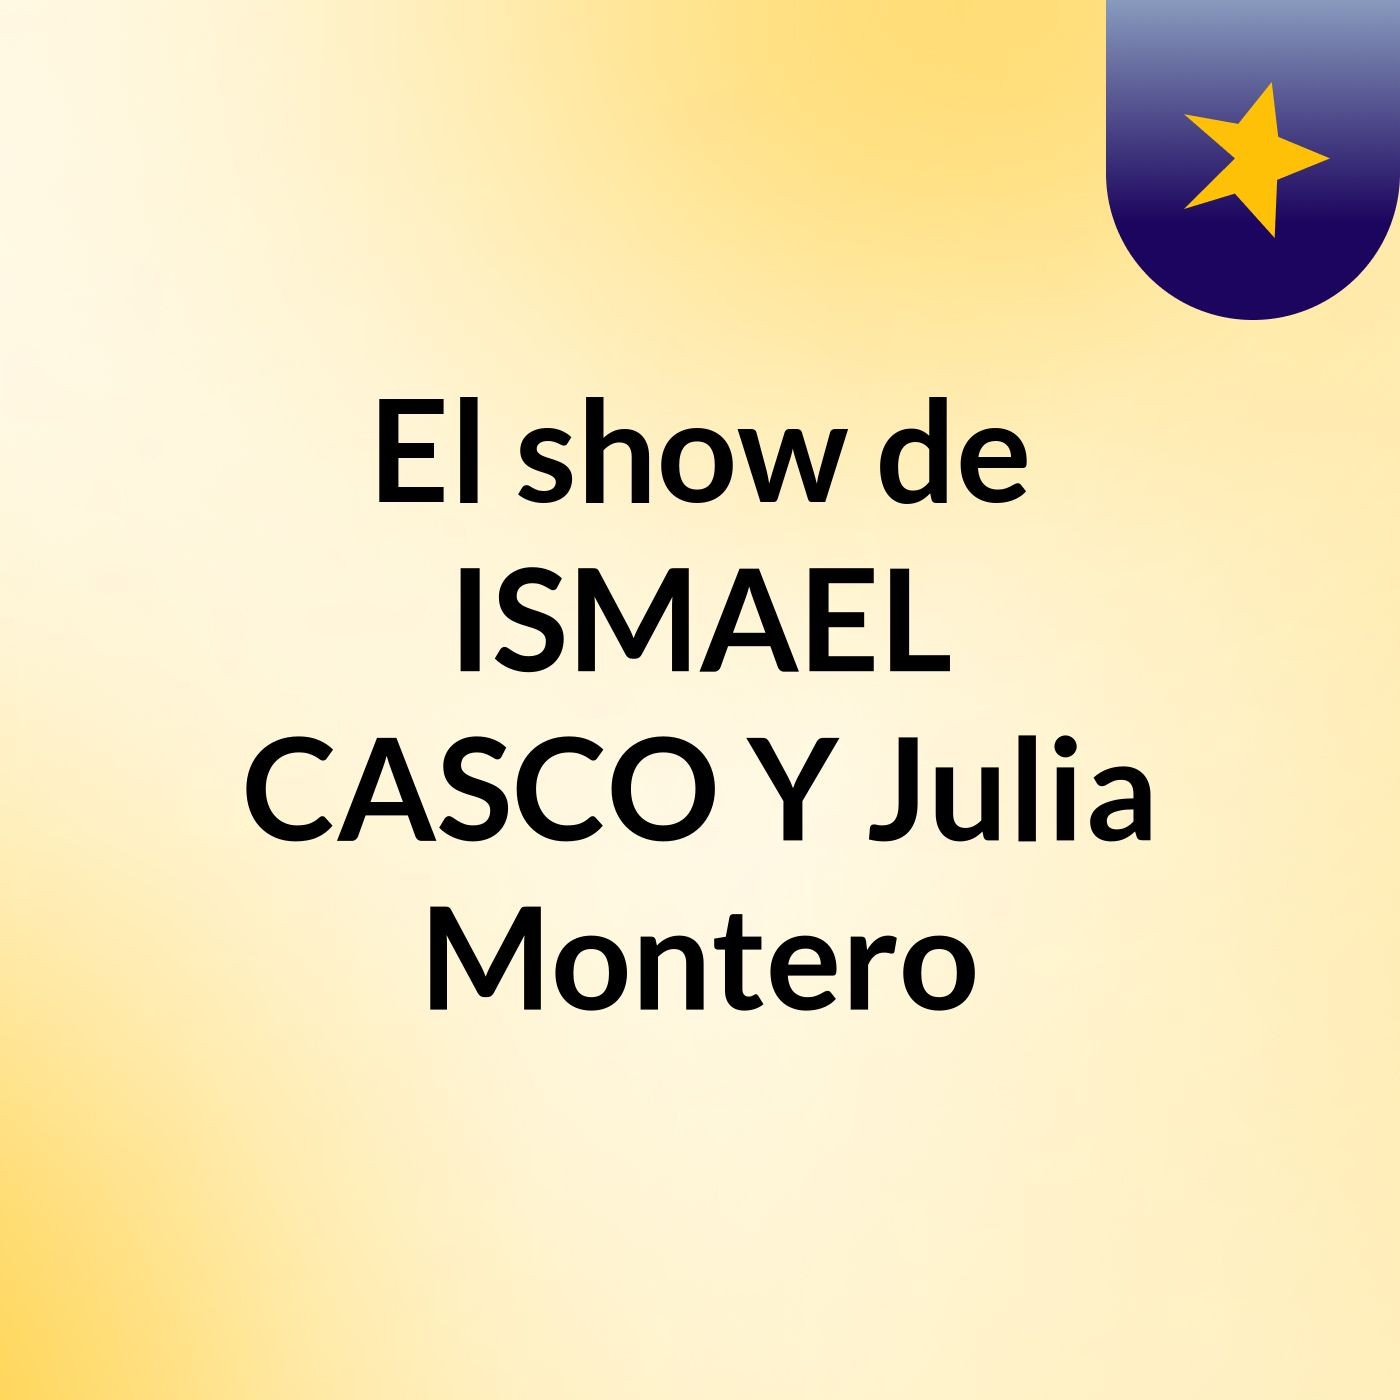 El show de ISMAEL CASCO Y Julia Montero